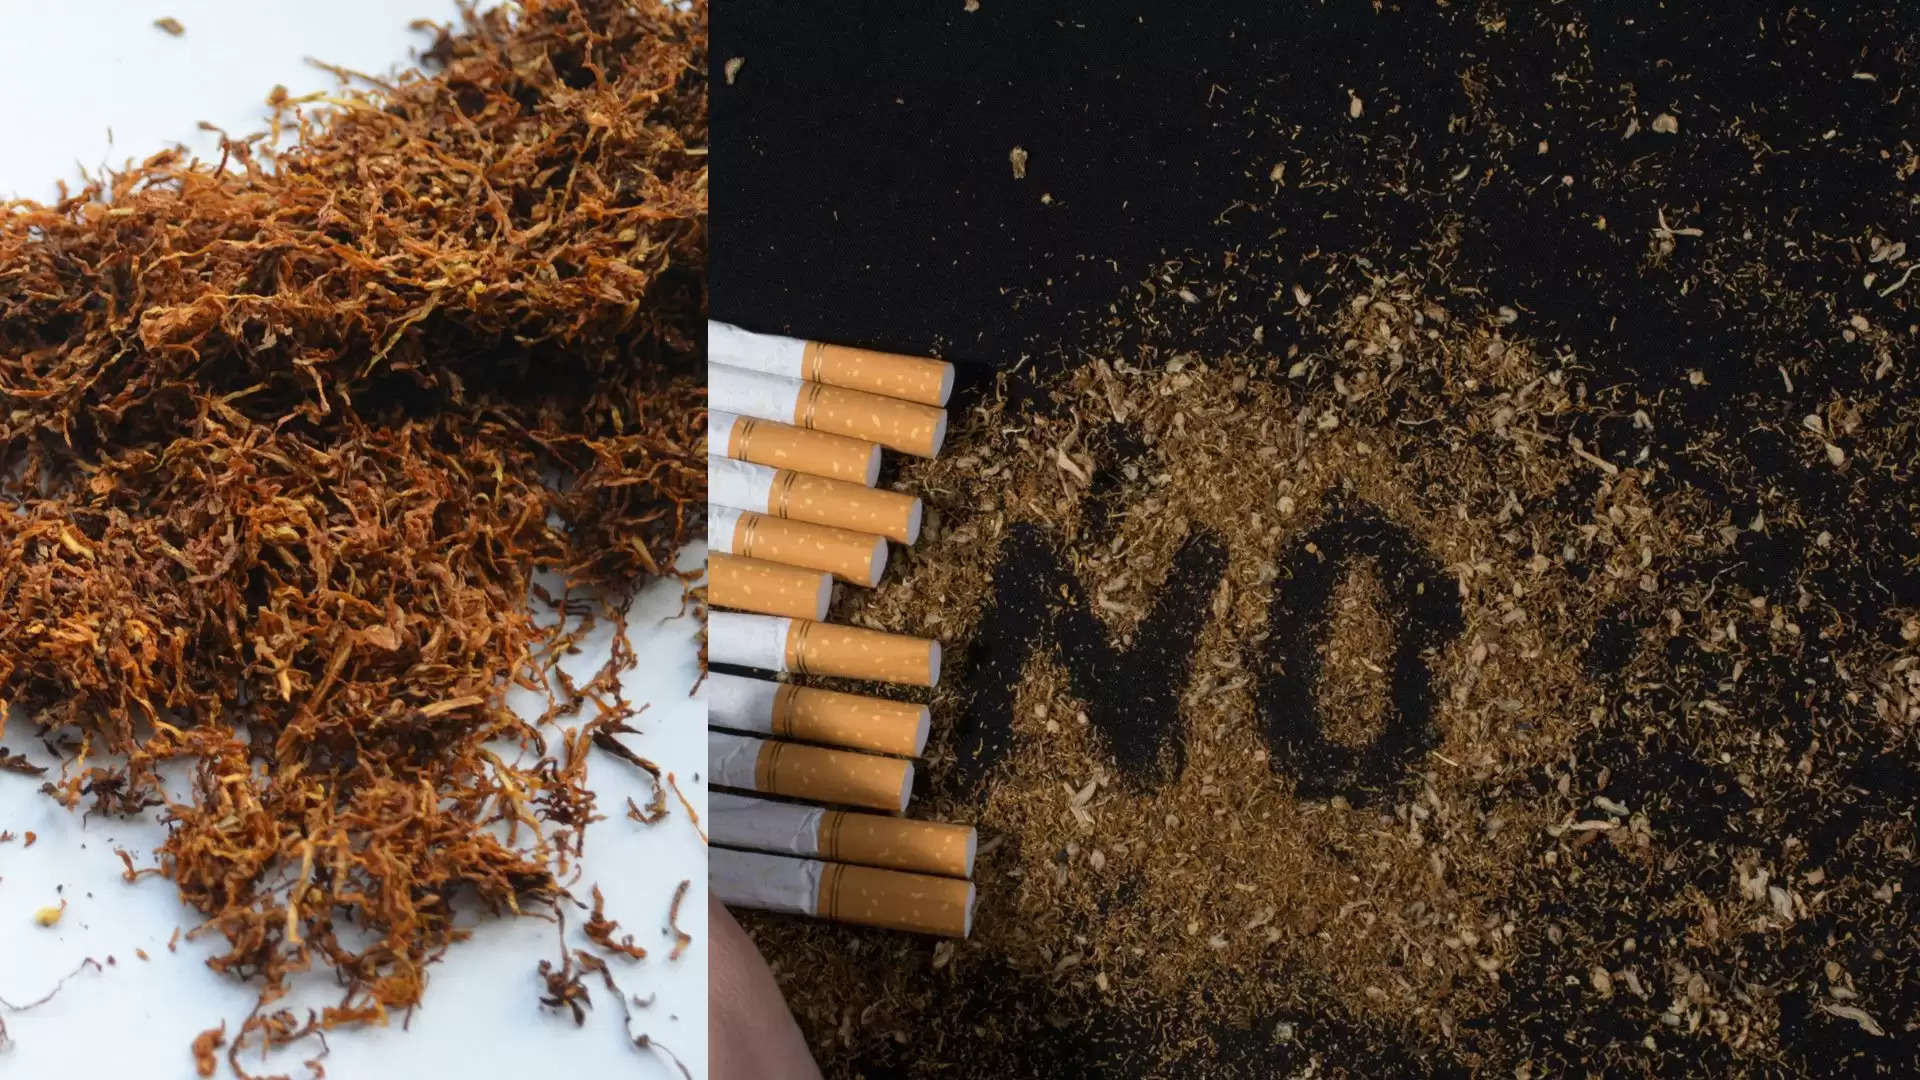 Tobacco and cigarette